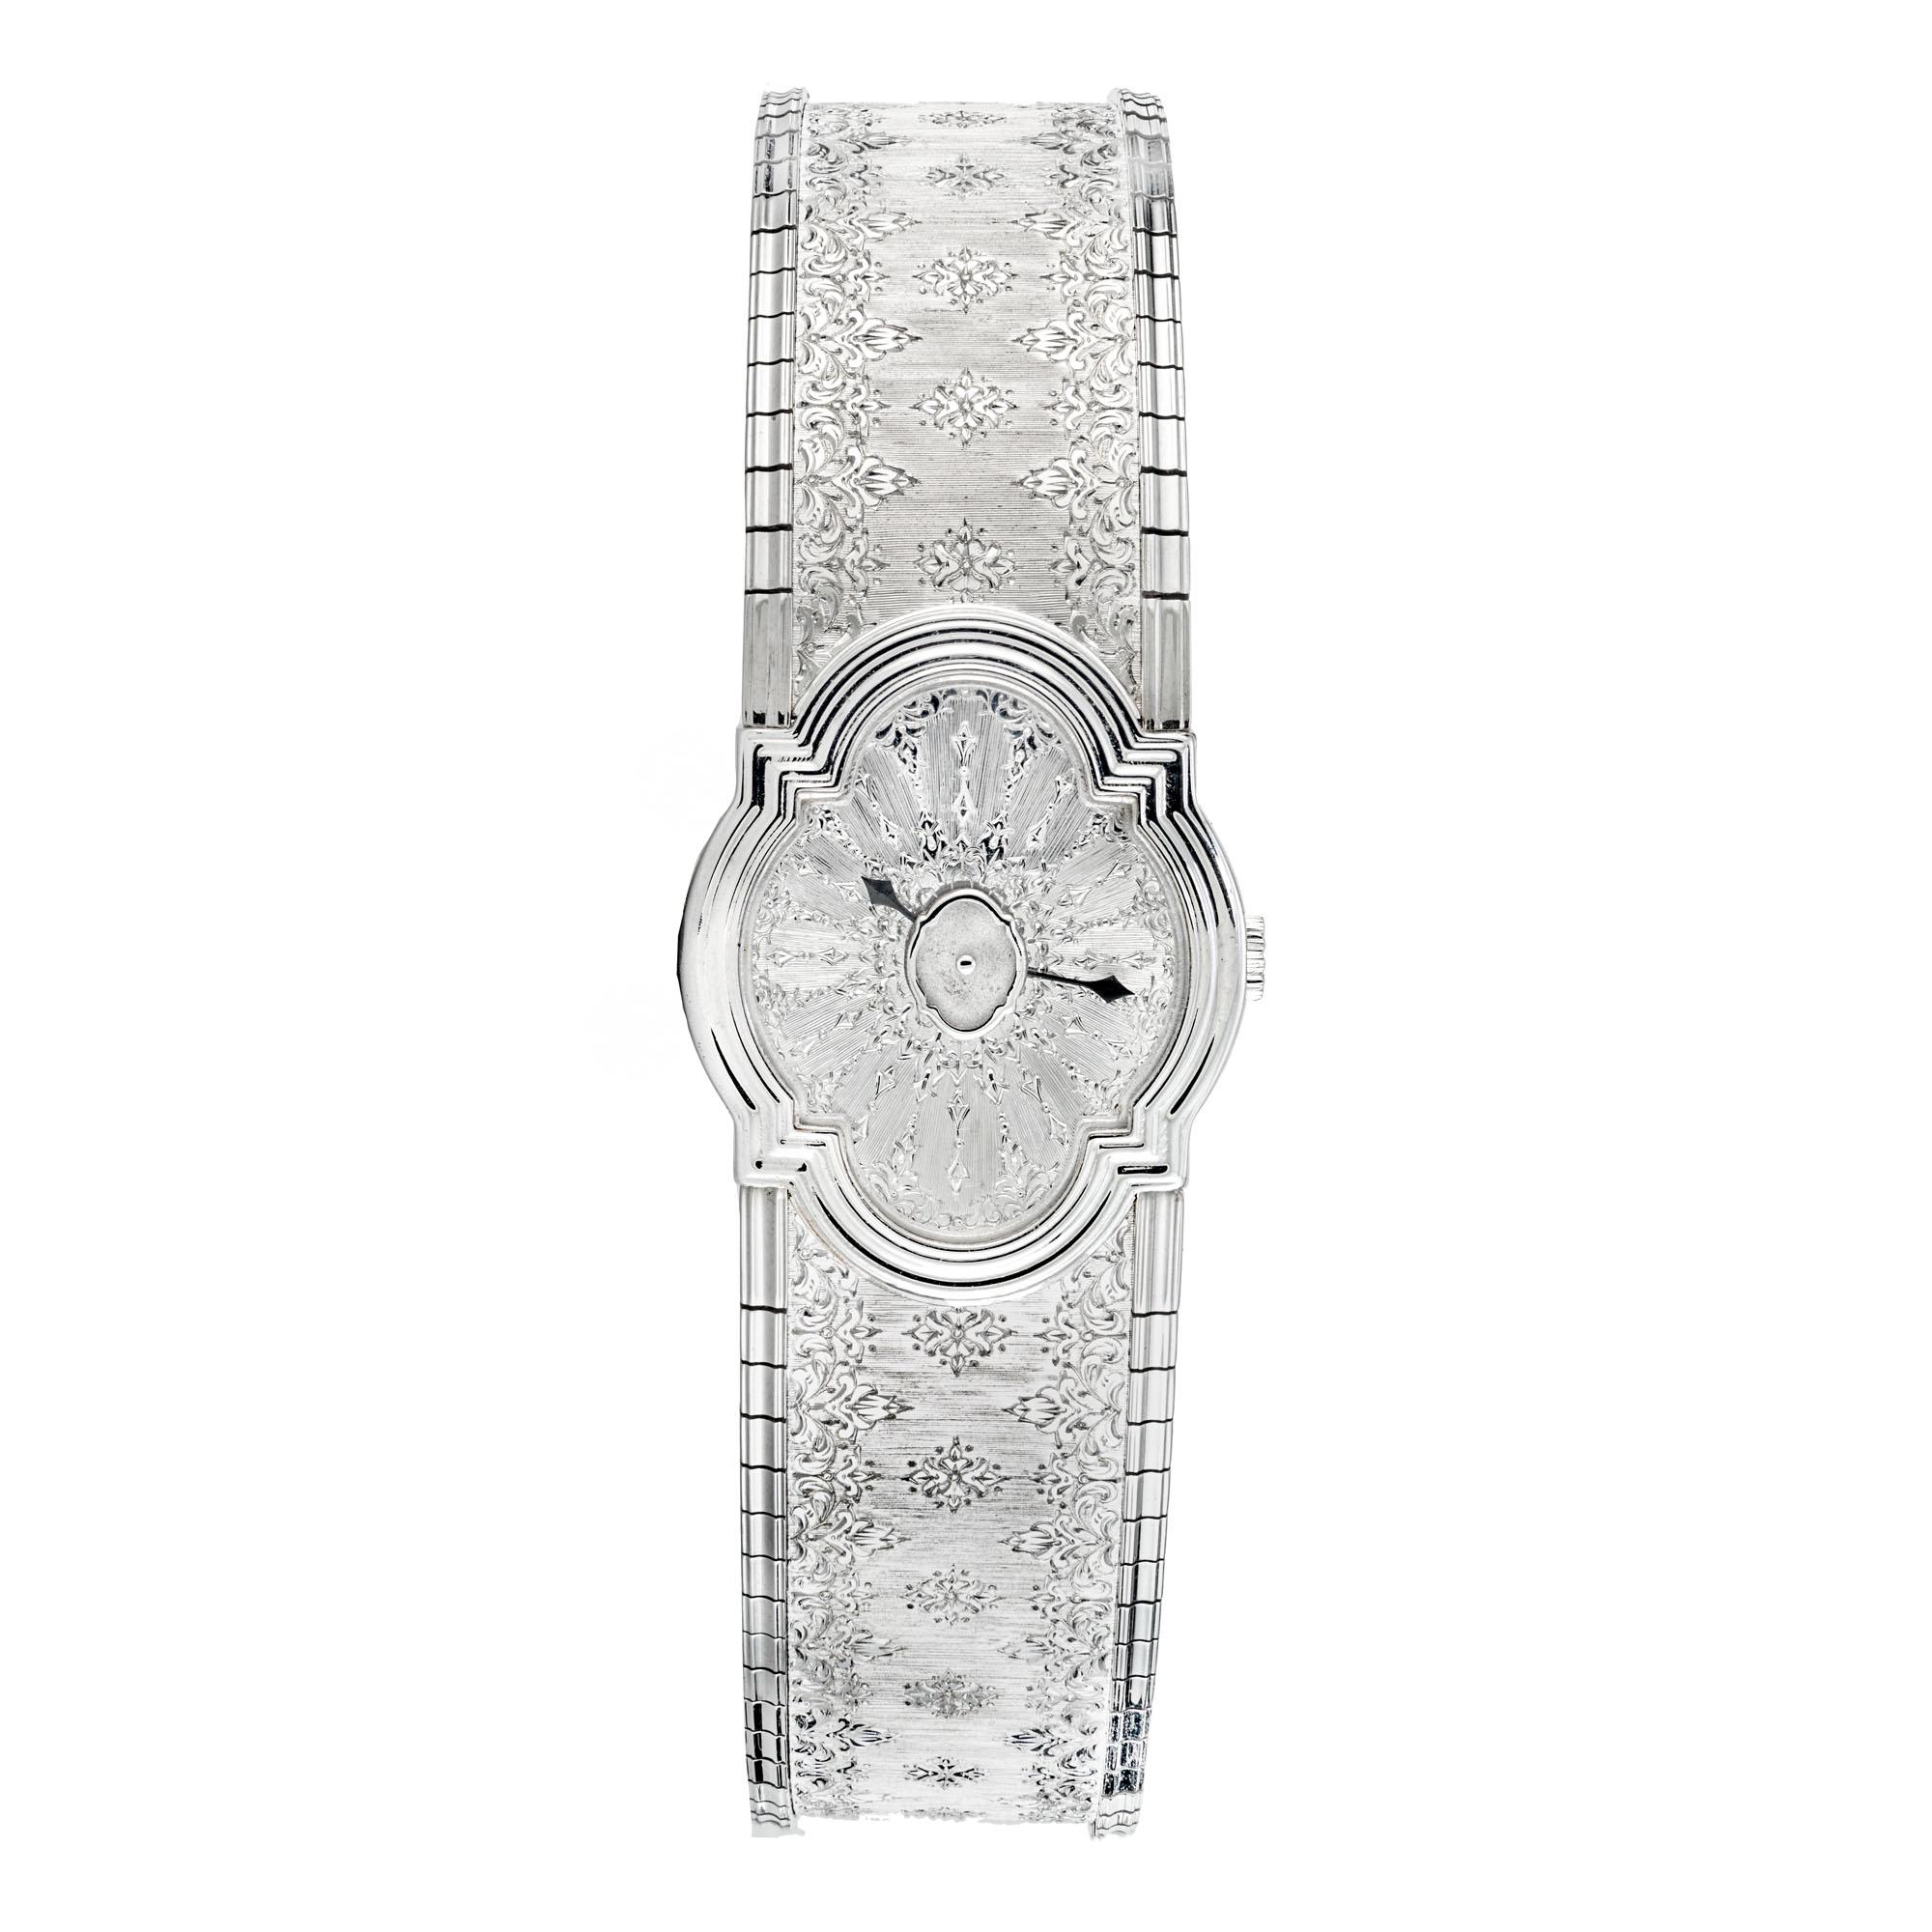 Buccellati Damen Arischron 18k Weißgold Armbanduhr. Nummer 008 einer Serie von nur 100 Uhren, von diesen 100 Uhren Produktion umfasste Weiß-und Gelbgold. 7 Zoll lang. Das Arischron-Design ist ein perfektes Beispiel für die Kunst von